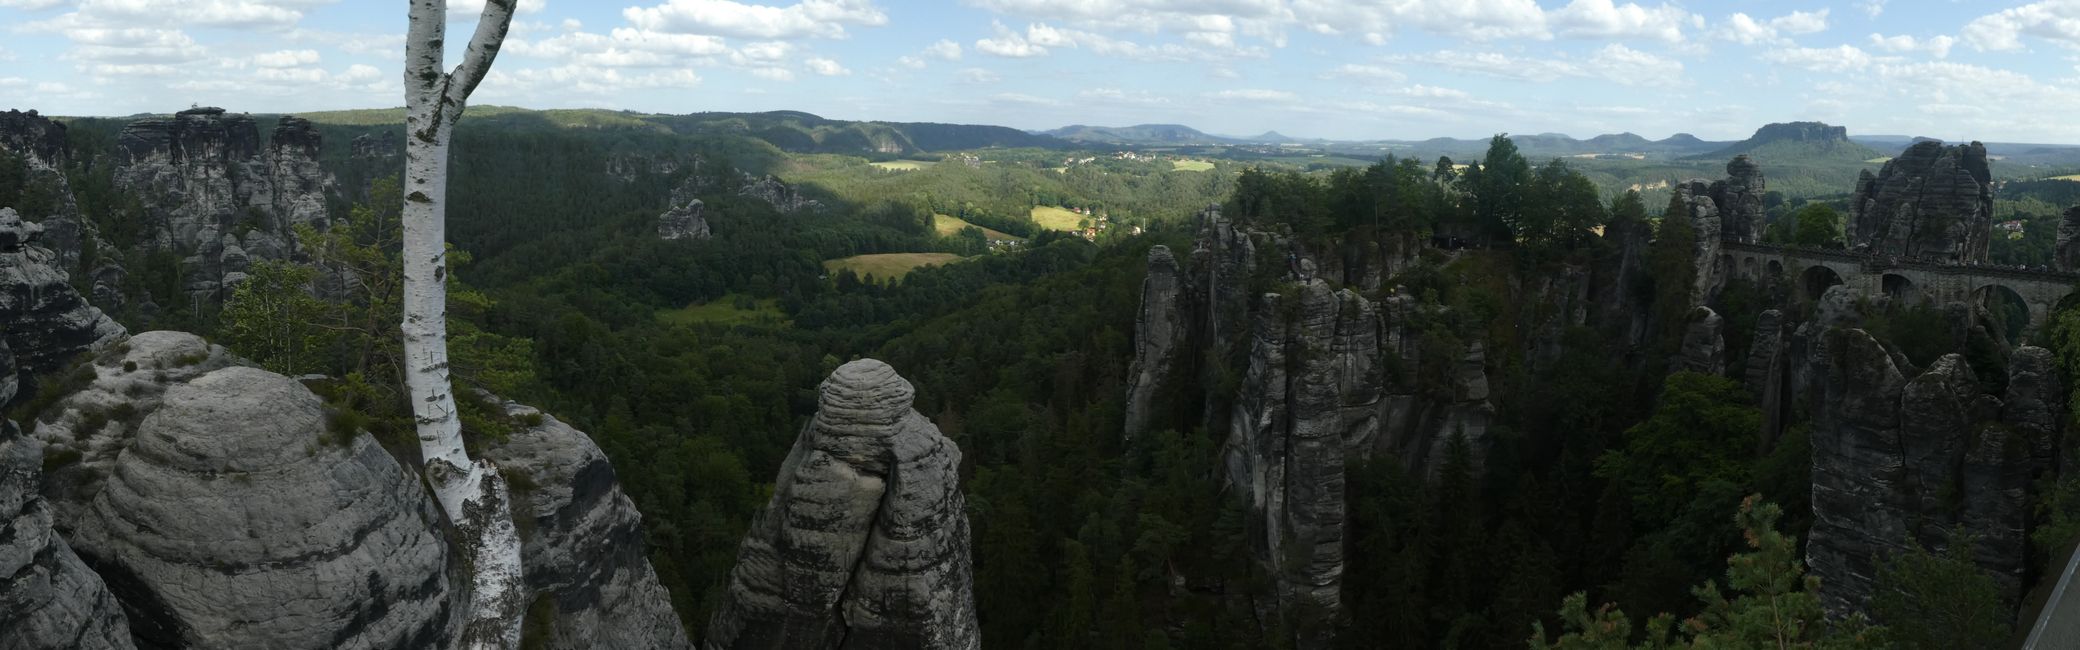 Elbsandsteingebirge: Königstein and Bastei